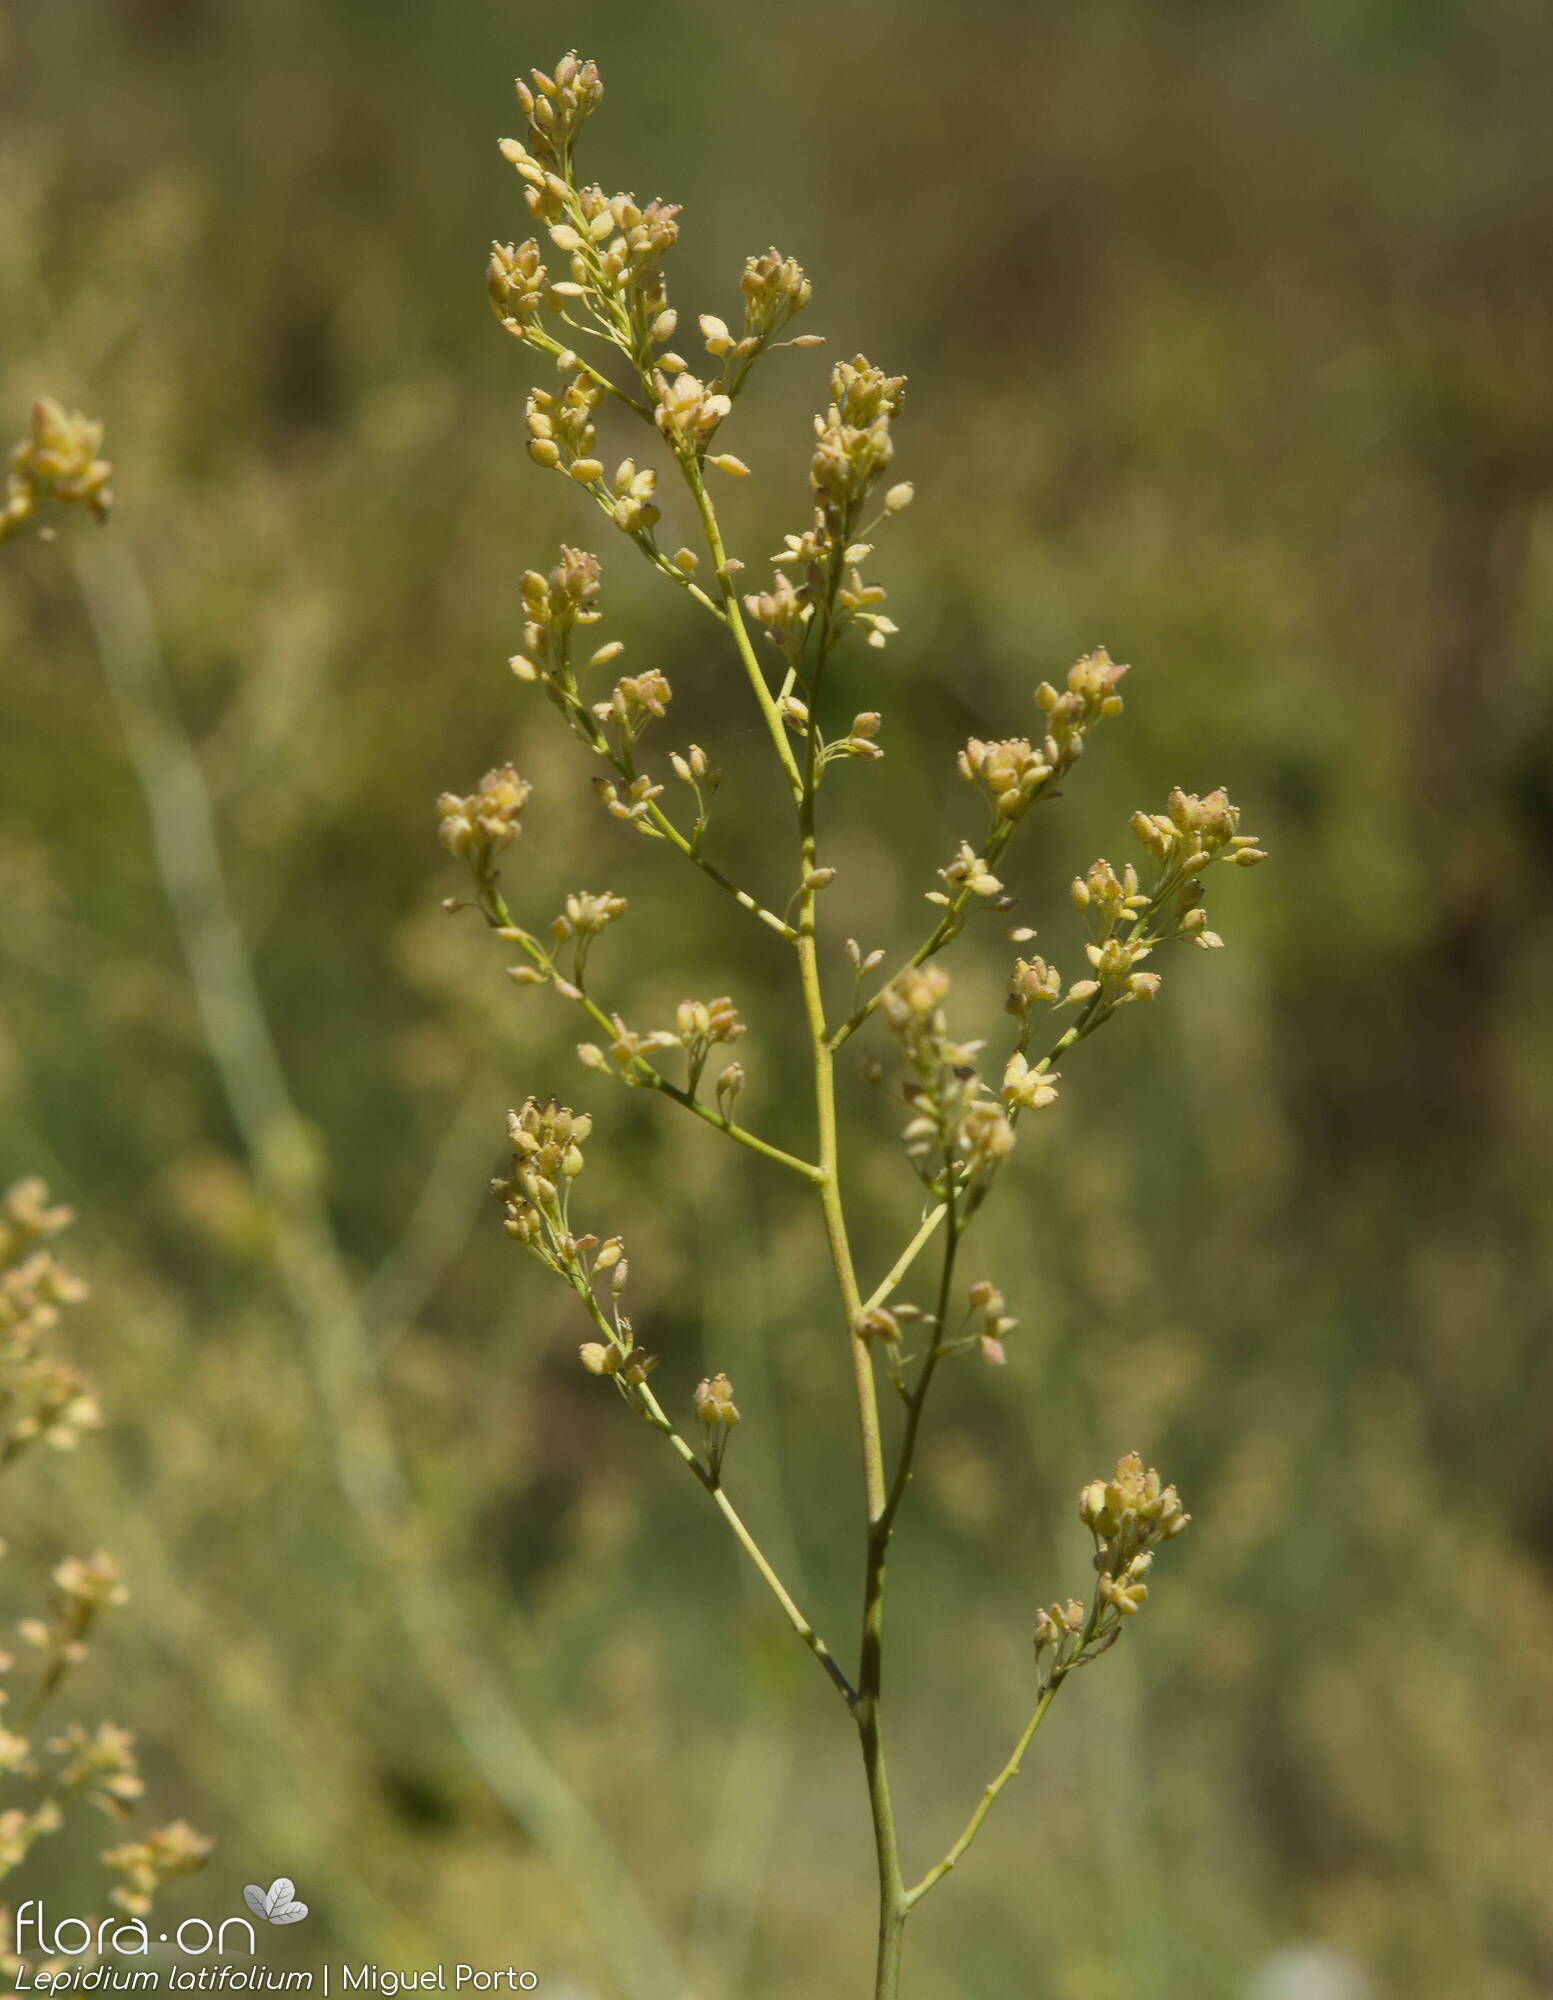 Lepidium latifolium - Flor (geral) | Miguel Porto; CC BY-NC 4.0